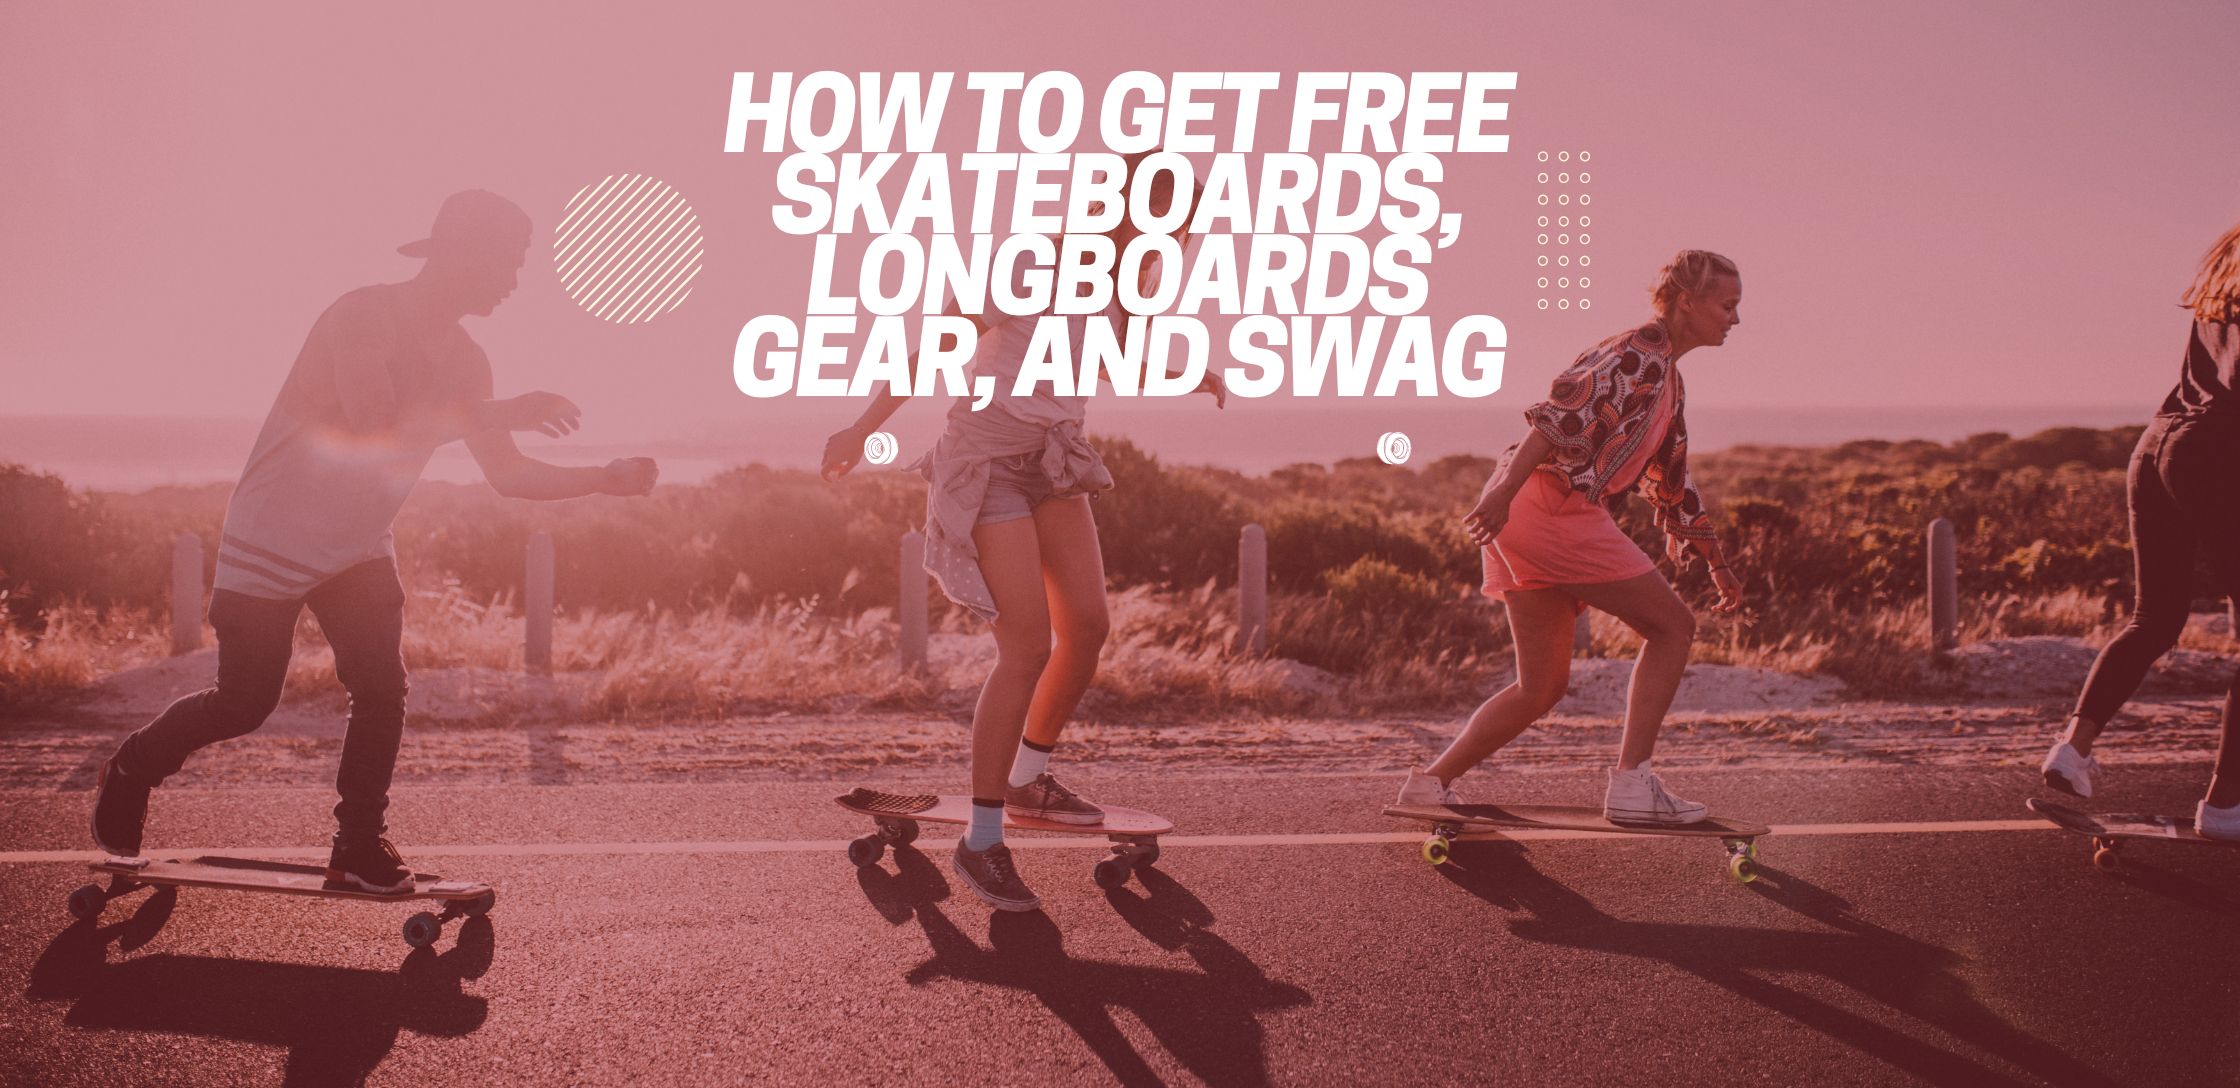 Free Skateboarding Gear